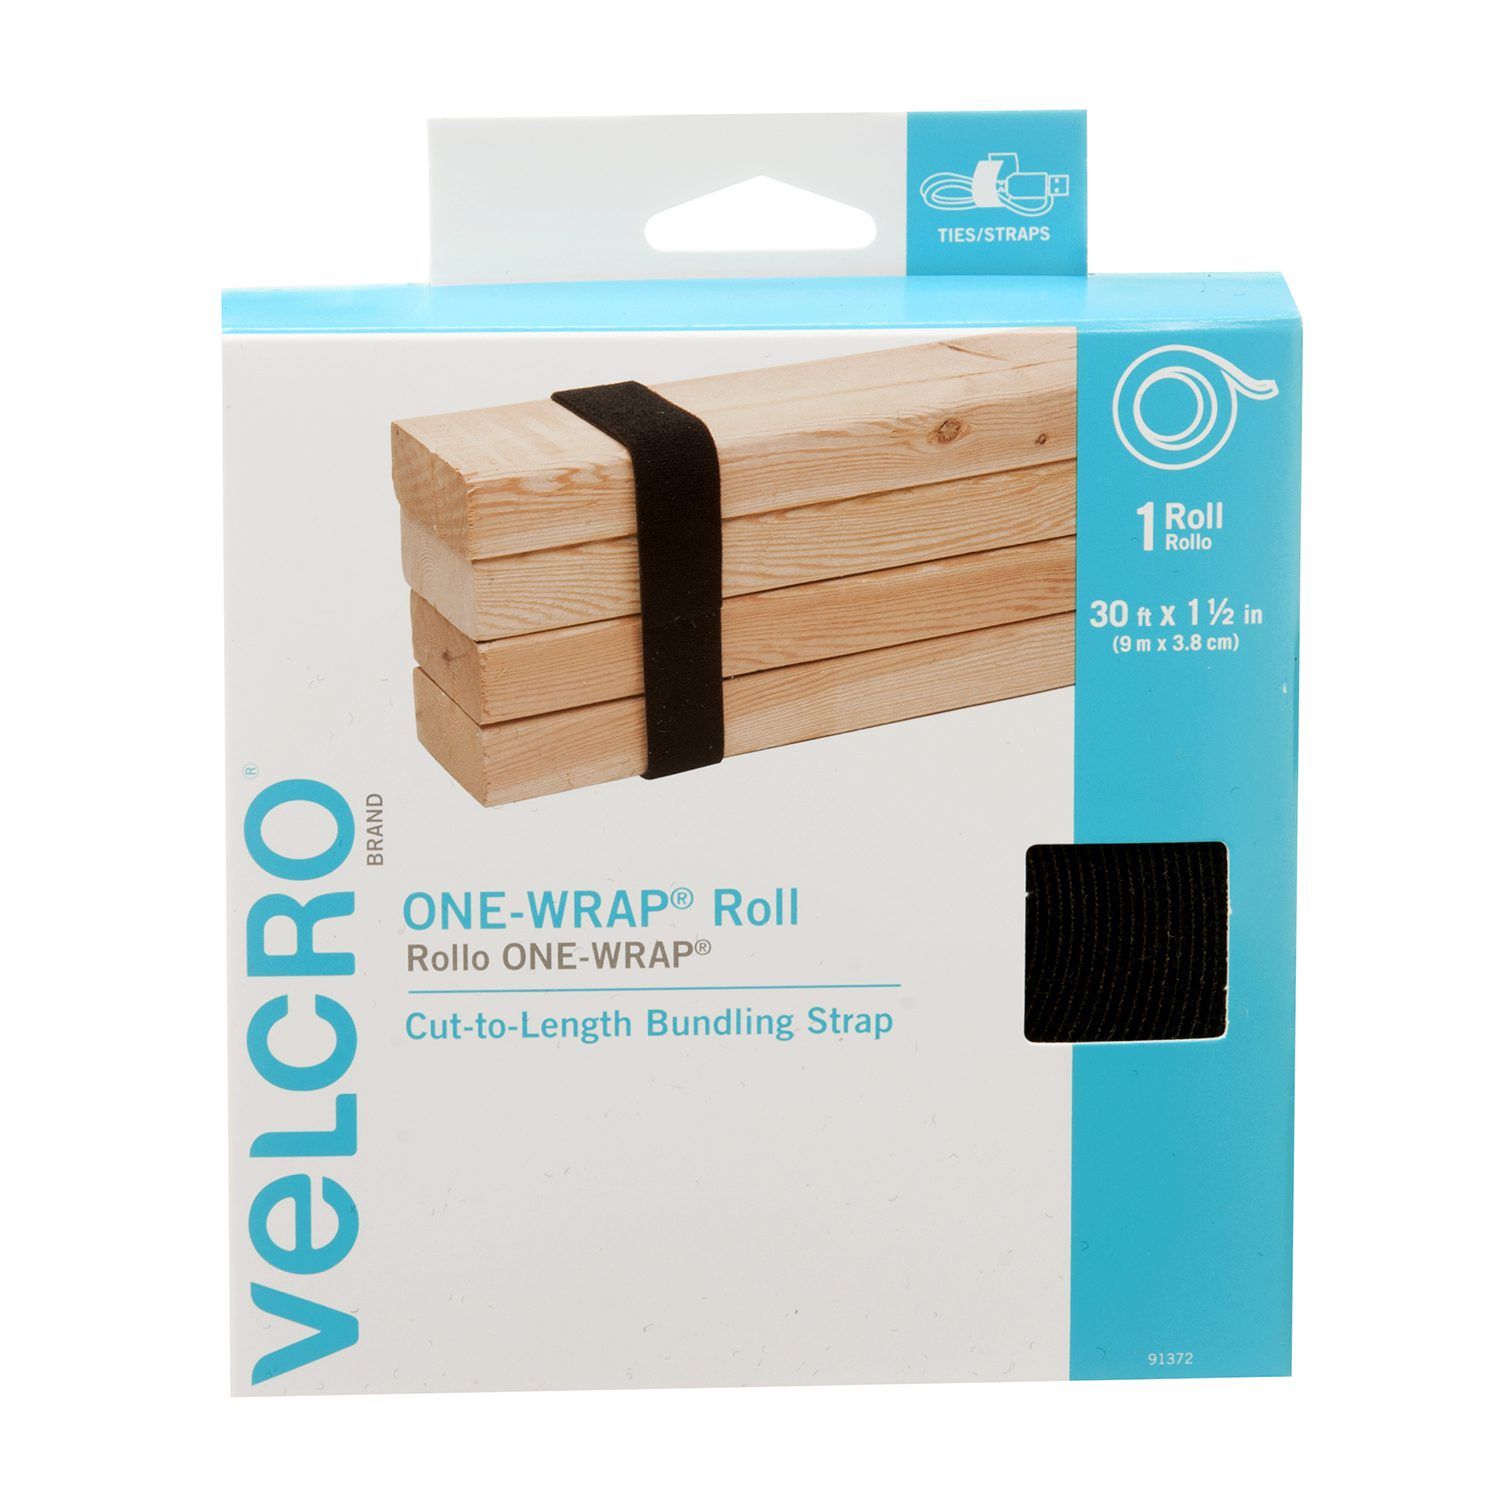 One Wrap Velcro Strip